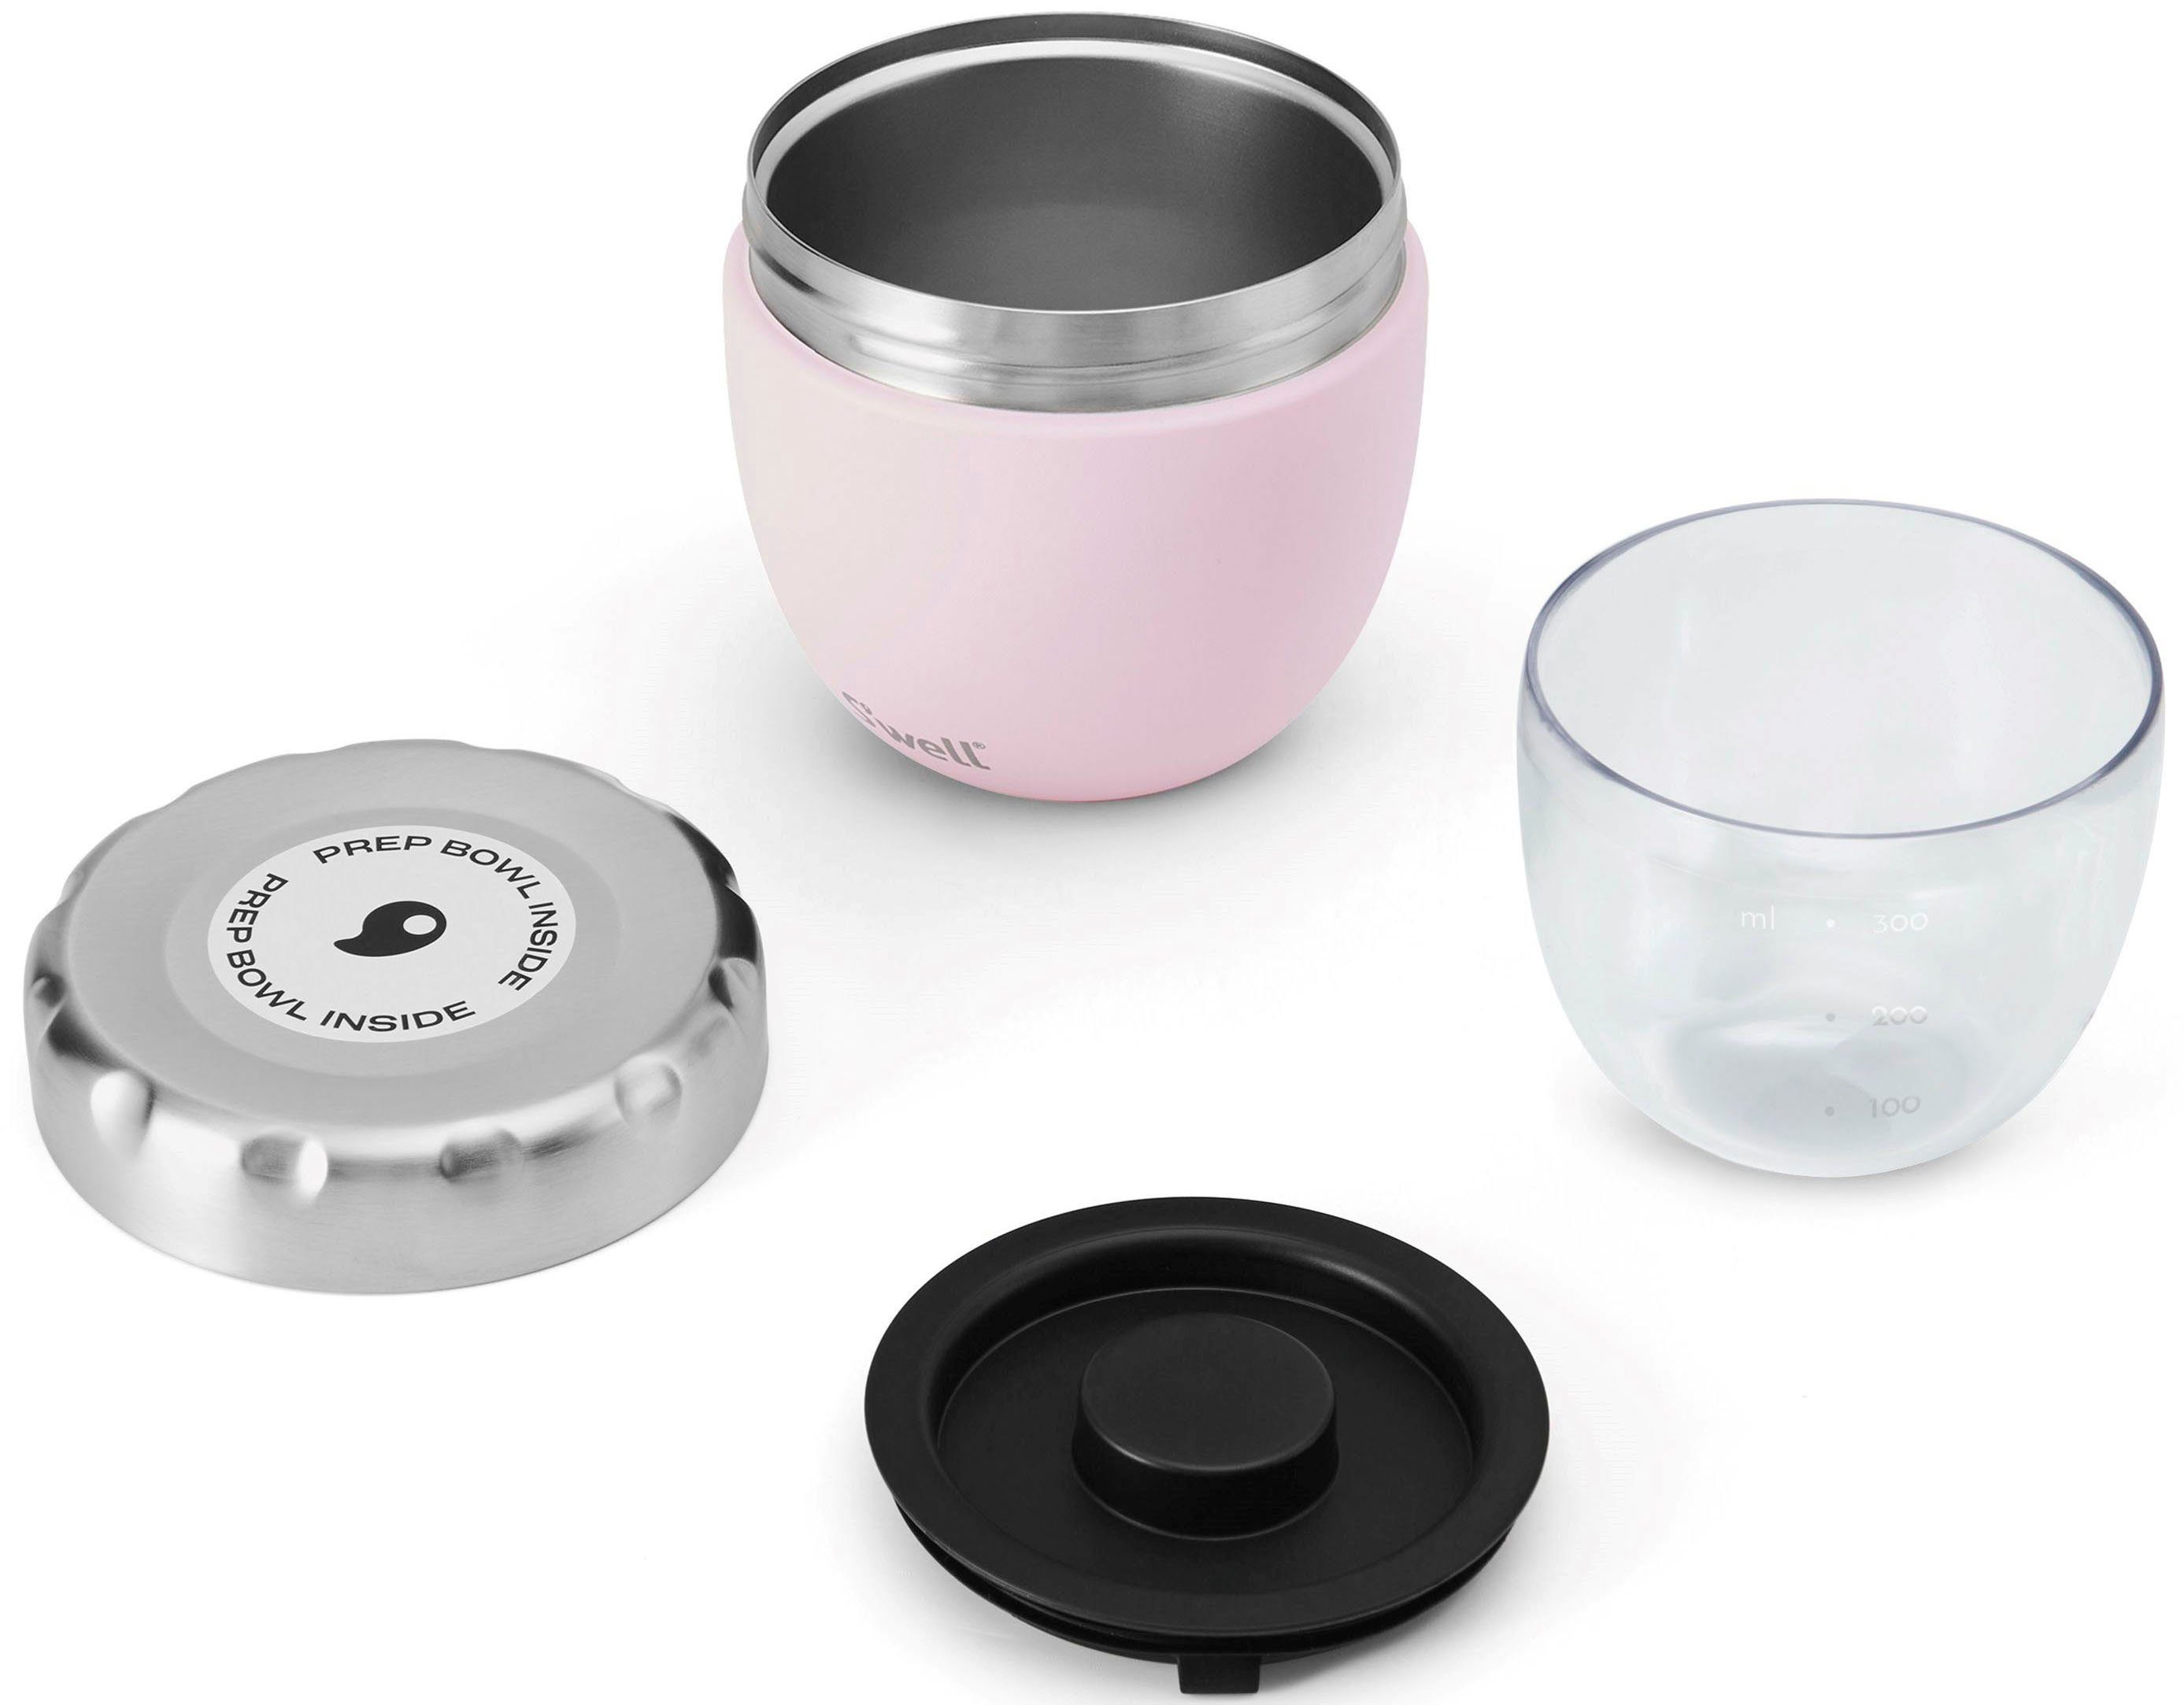 S'well Thermoschüssel S’well Pink Food Therma-S'well®-Technologie dreischichtiger Bowl, Außenschale (2-tlg), 2-in-1 mit Topaz Edelstahl, Eats